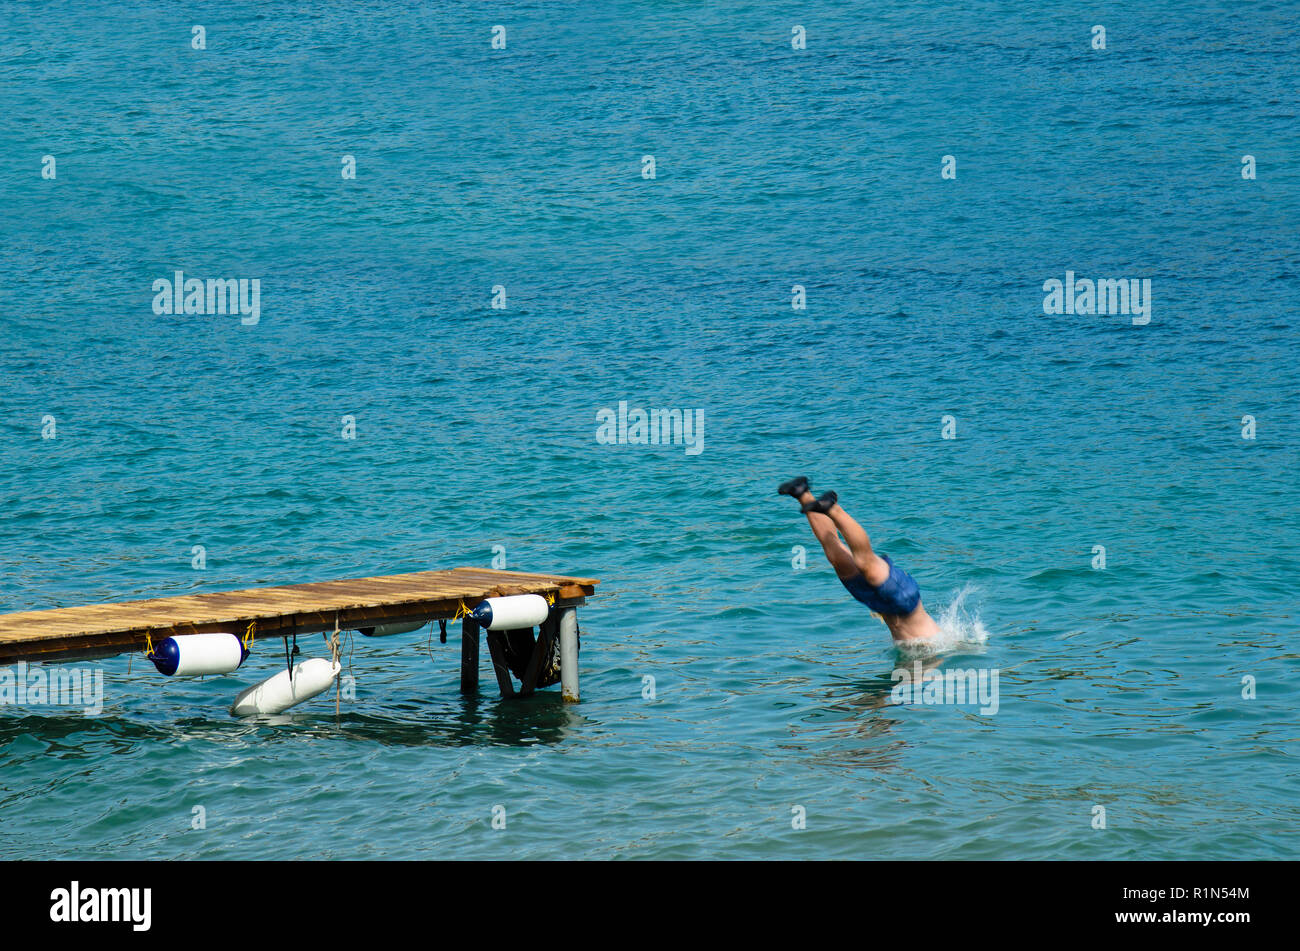 Uomo in un costume da bagno si tuffa nel mare da un molo in legno, vestita di nero scarpe di gomma Foto Stock